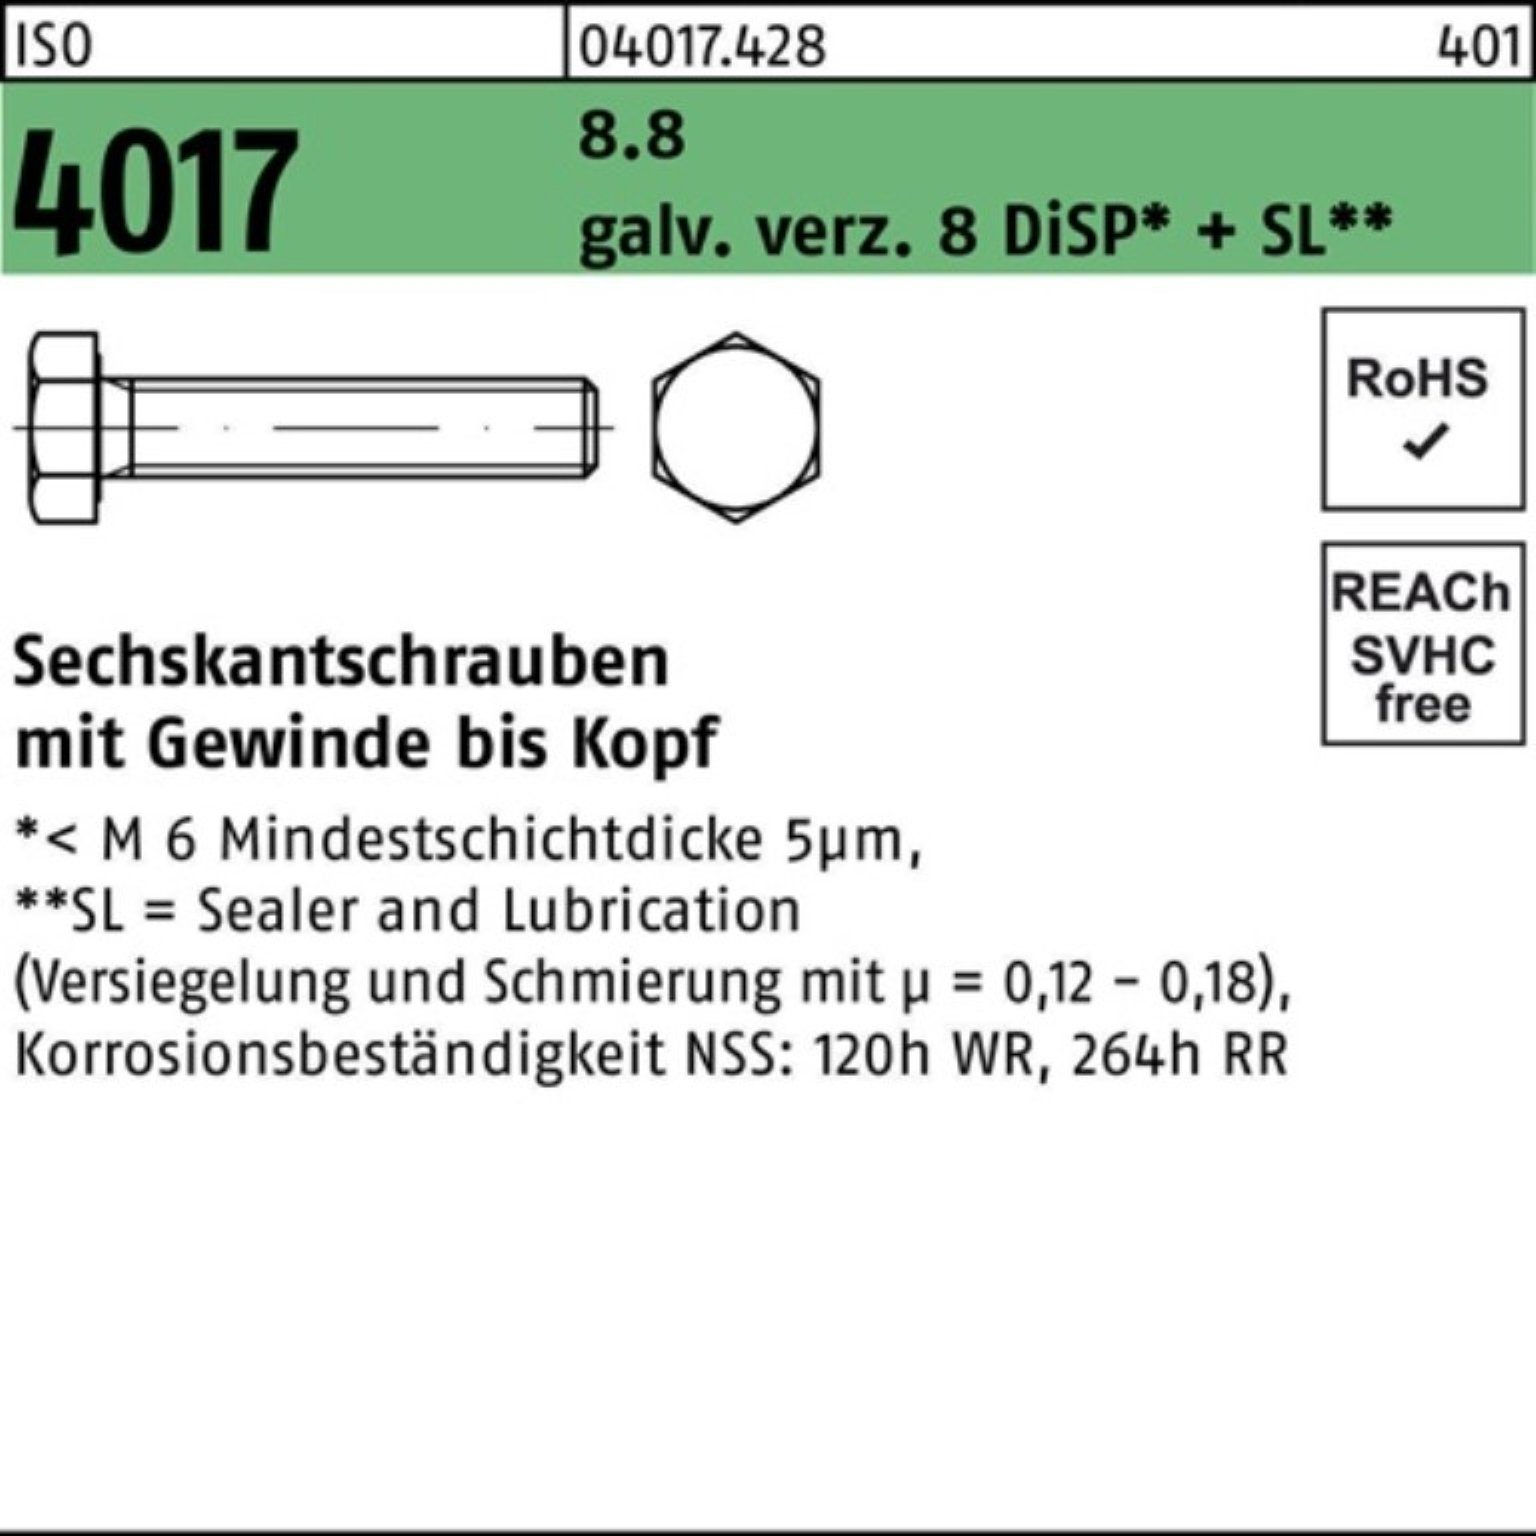 Bufab Sechskantschraube 100er 8 galv.verz. DiSP Pack VG M24x 4017 55 Sechskantschraube ISO 8.8